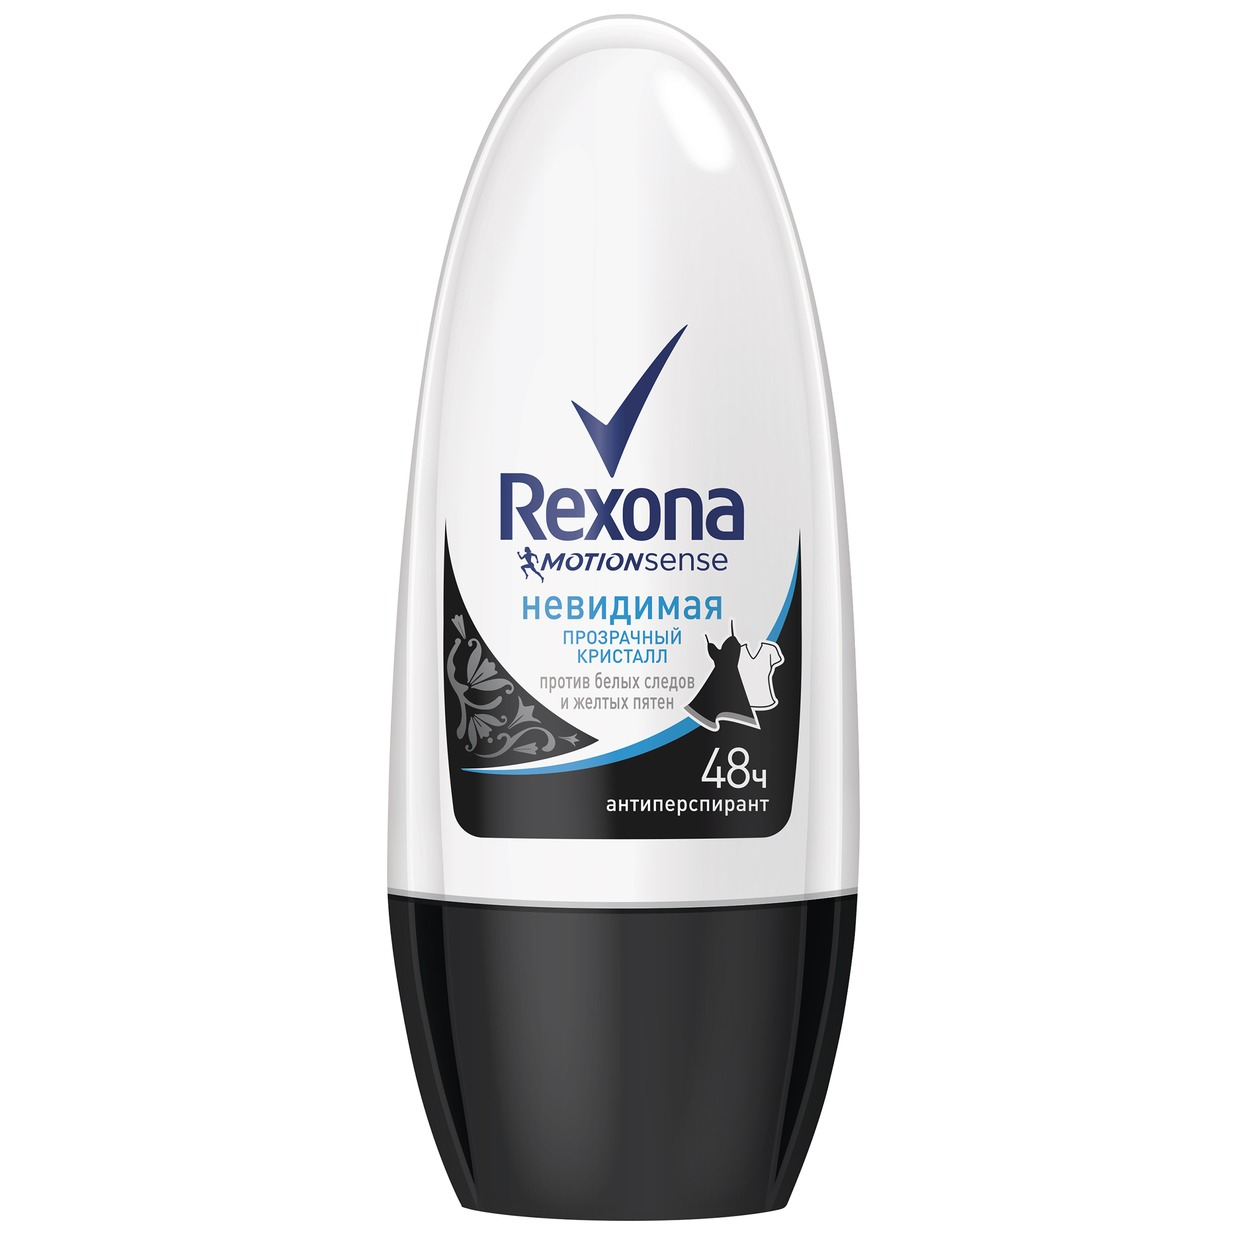 Дезодорант Rexona шариковый ролик женский 50 мл дезодорант шариковый nivea энергия свежести с экстрактом лемонграсса женский 50 мл